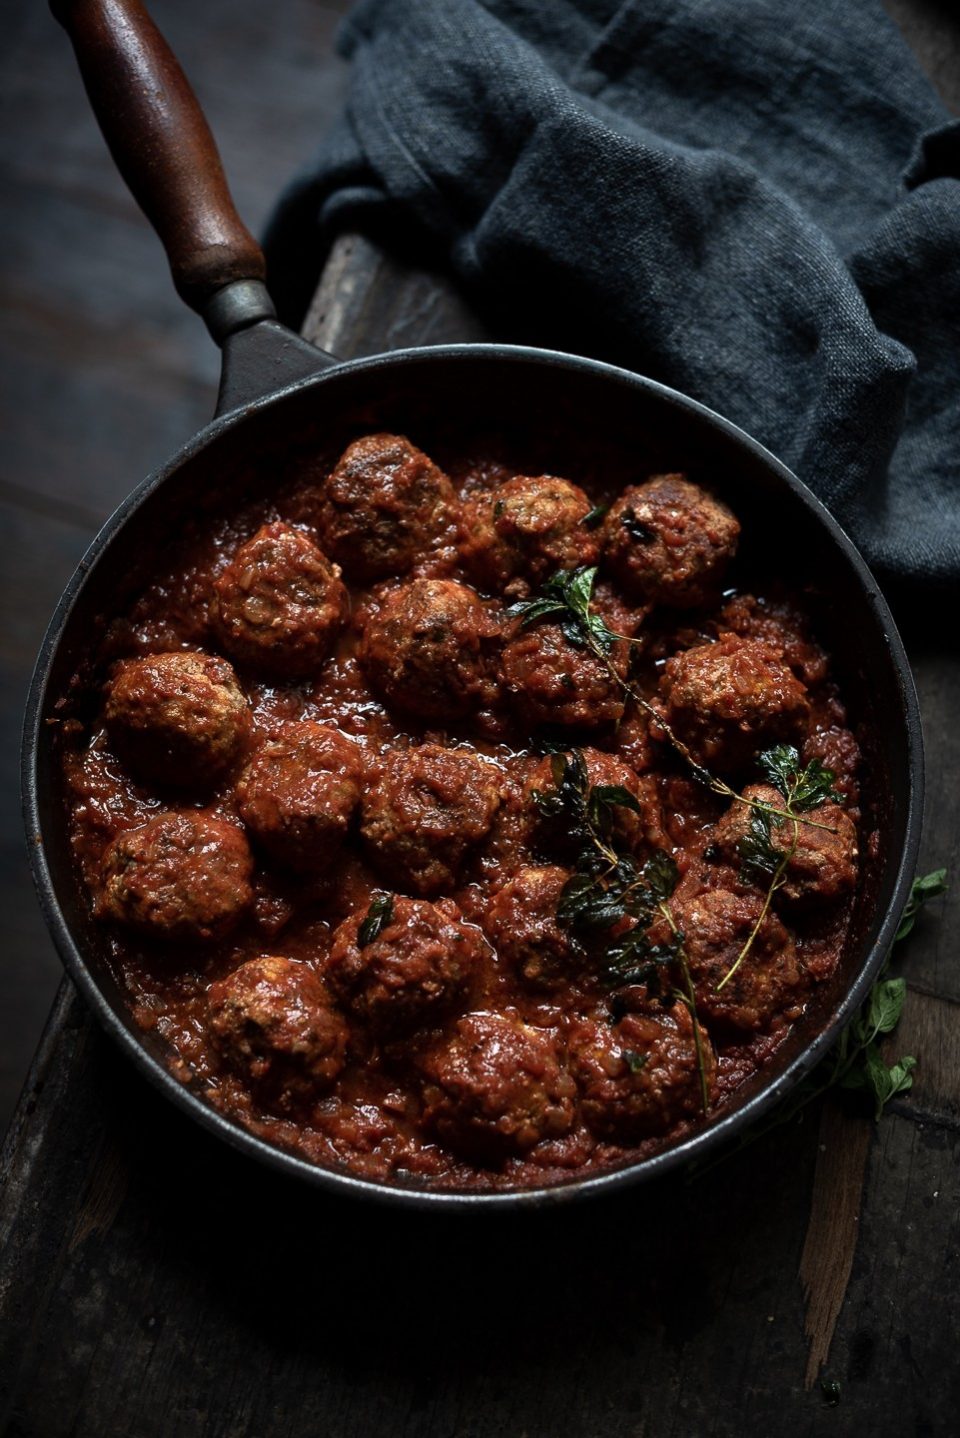 Ottolenghi's ricotta and oregano meatballs